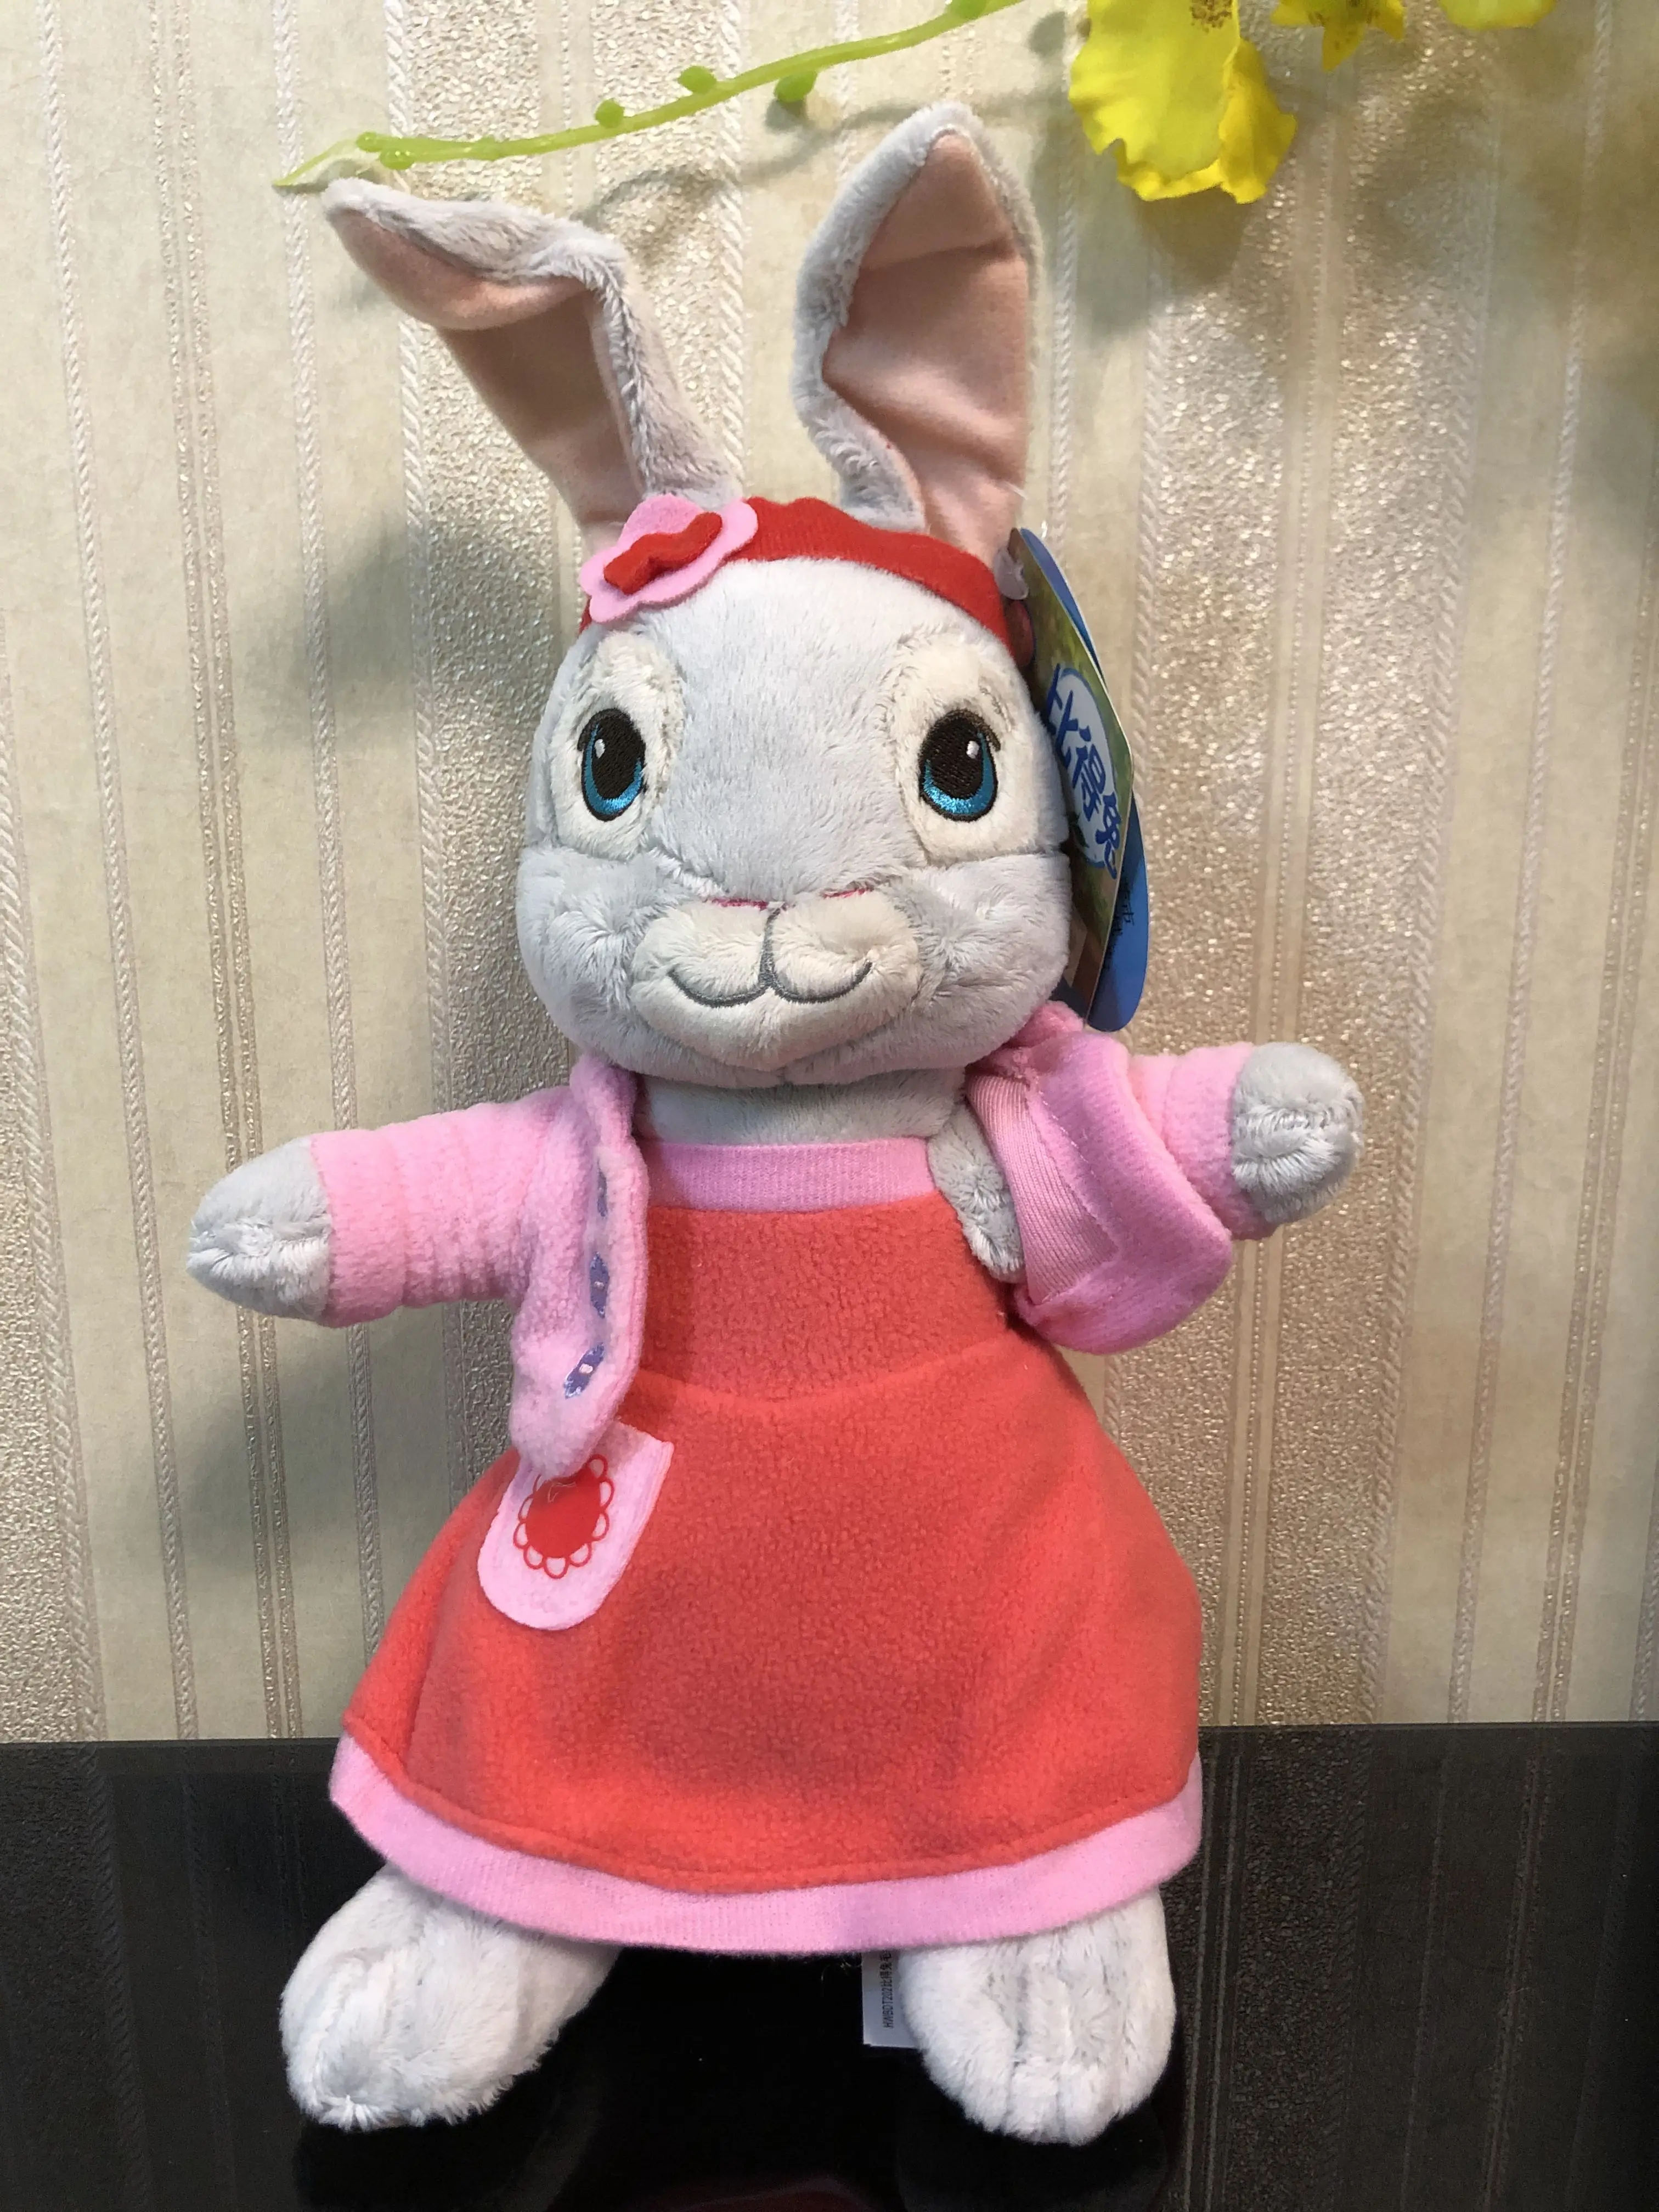 Подлинный питерский Кролик, Кролик, заполненная плюшевая игрушка, кукла Бенджамин, лилия, отправка другу, 30 см, 46 см, детский подарок на день рождения, Рождество